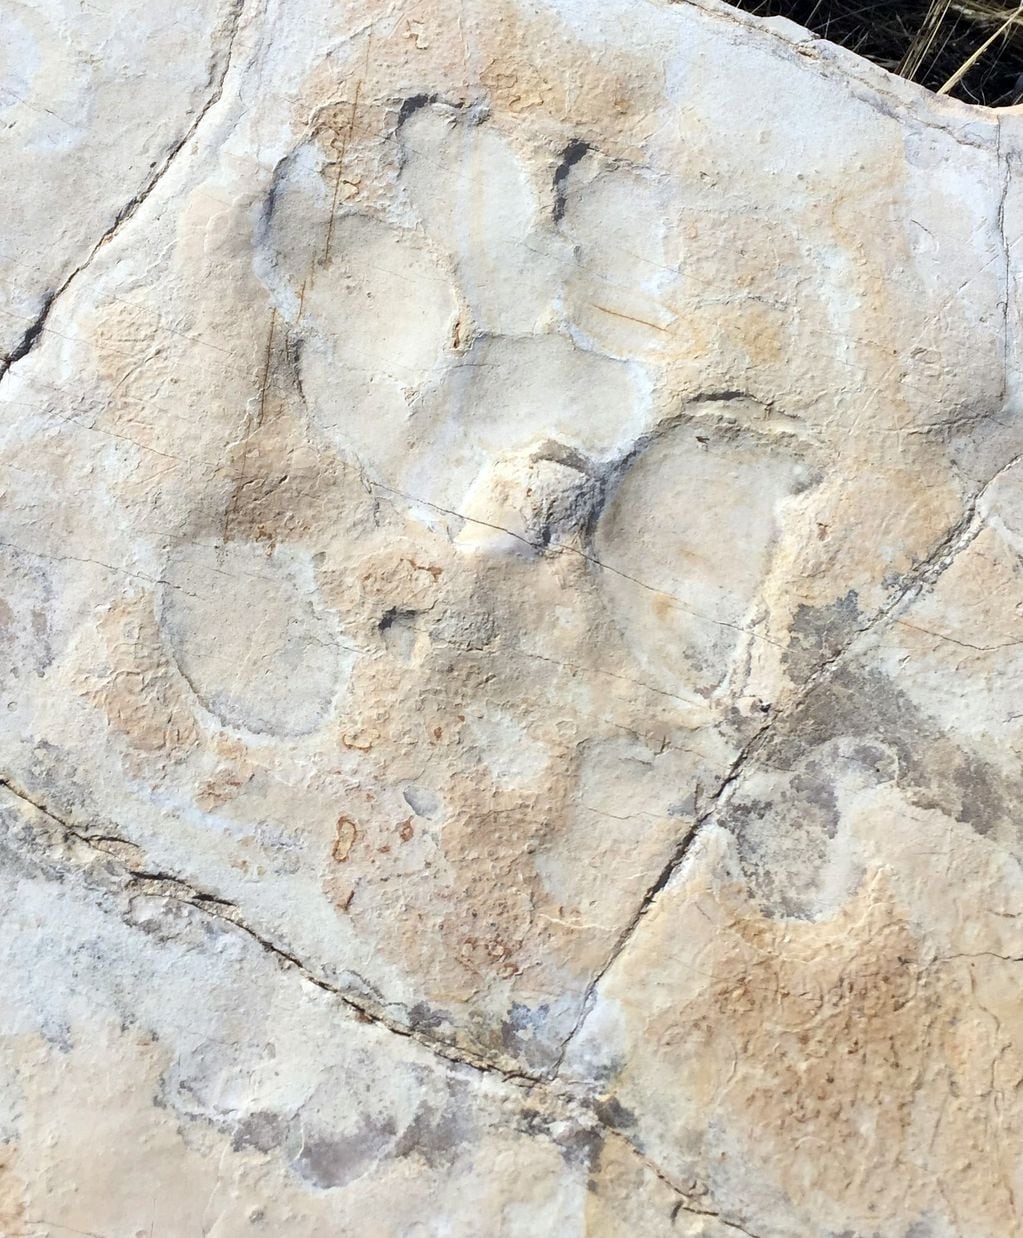 
Huella aislada de arcosaurio. Se aprecia su morfología característica con un dedo inclinado lateralmente. Largo de la huella, 30 cms.